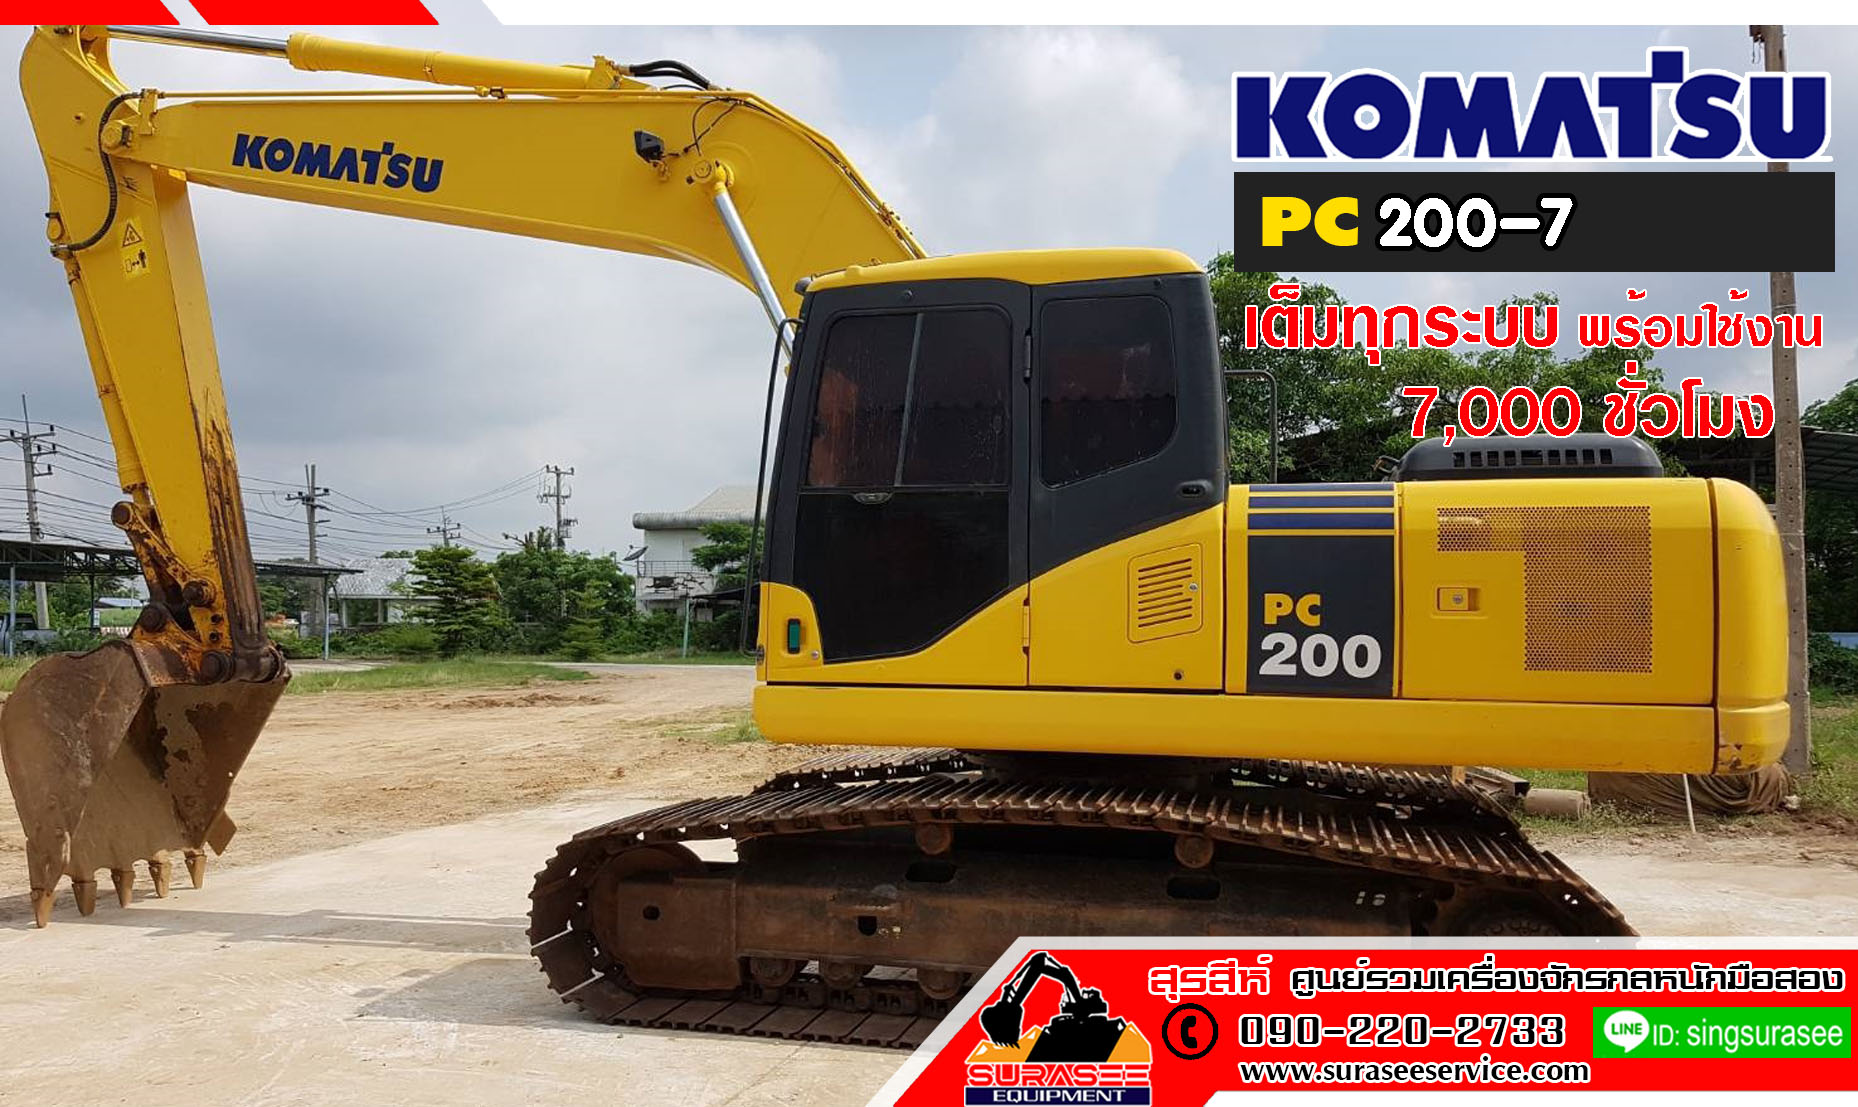 ขายรถแบคโฮมือสอง KOMATSU PC200-7 ใช้งานเพียง 7 พันชั่วโมง